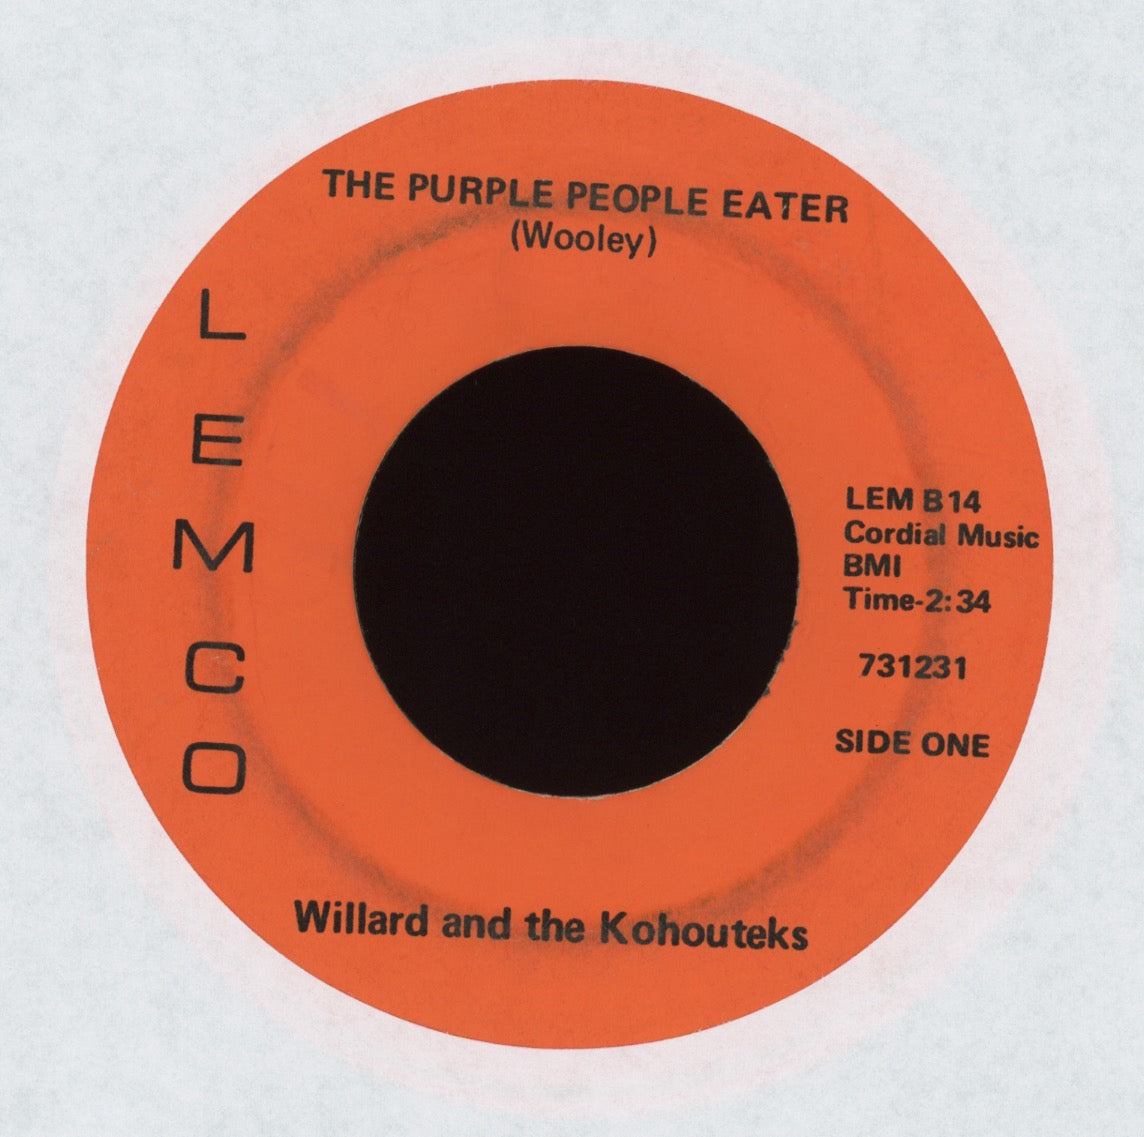 Willard and the Kohouteks - The Purple People Eater on Lemco